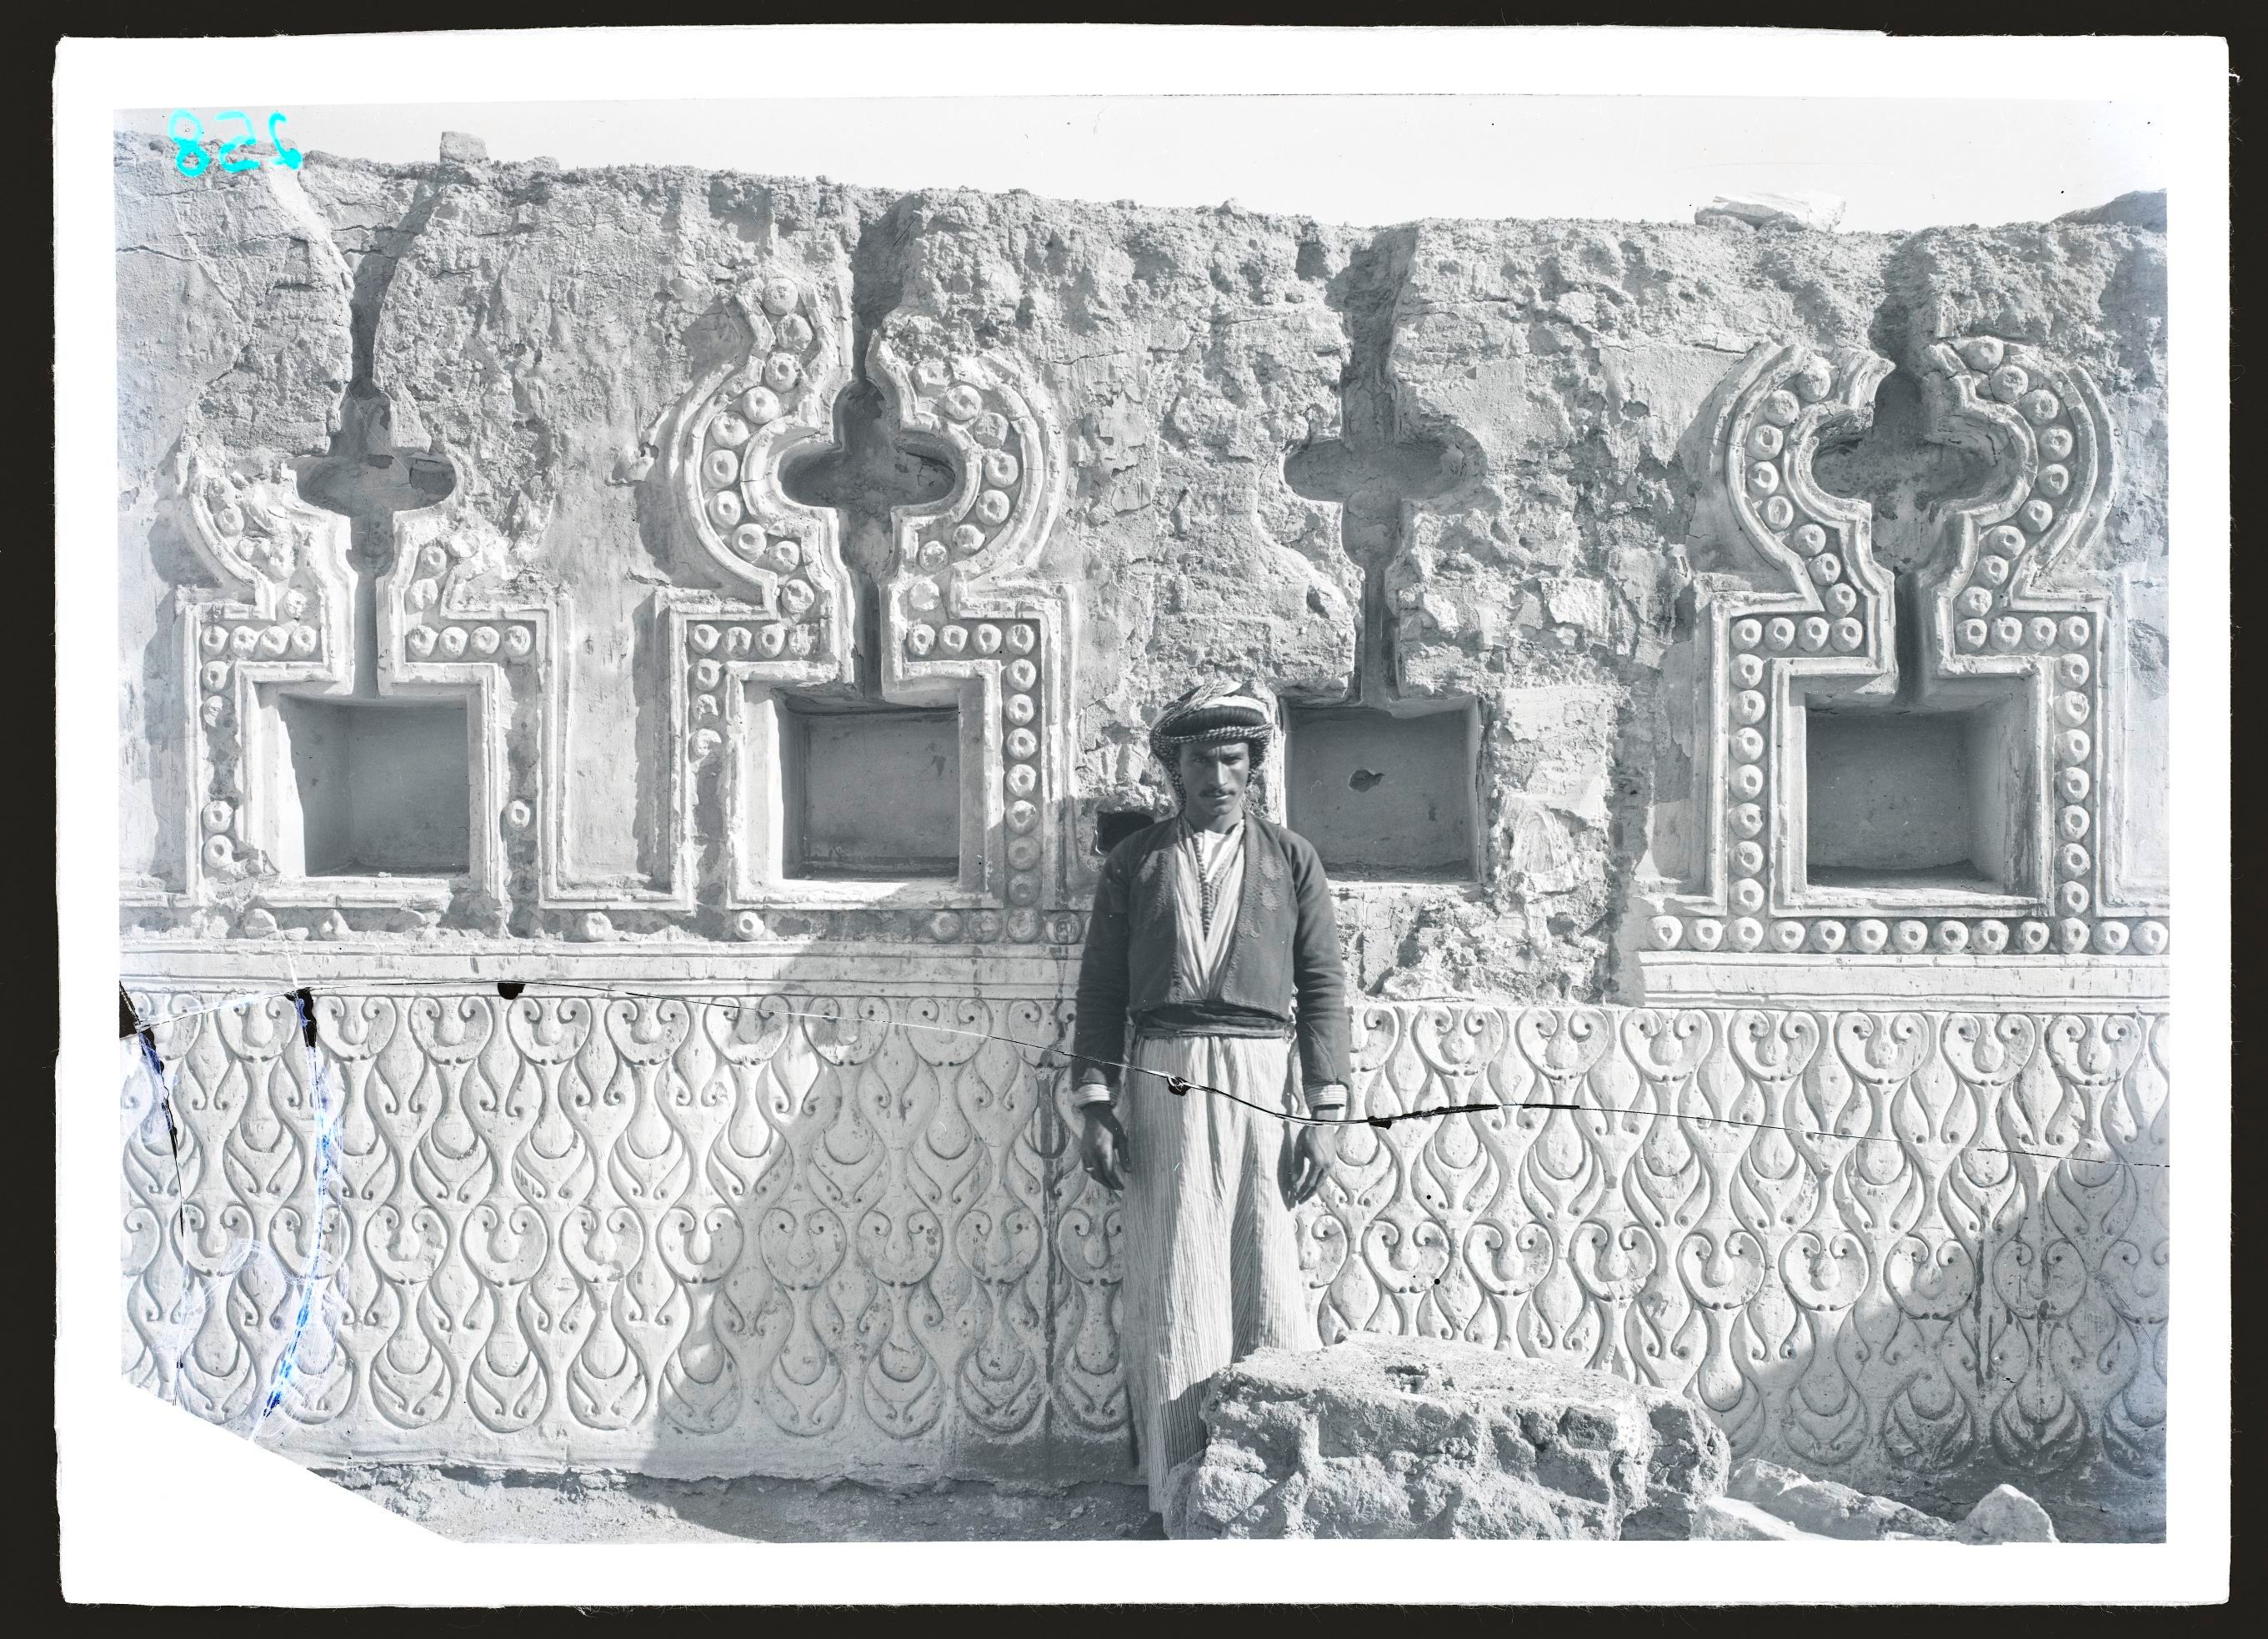 Ernst Herzfeld: Balkuwara, Zimmer 19, 1911-1913. Glasnegativ, 13 x 18 cm, Museum für Islamische Kunst, Inv. Nr. Pl. Sam 258